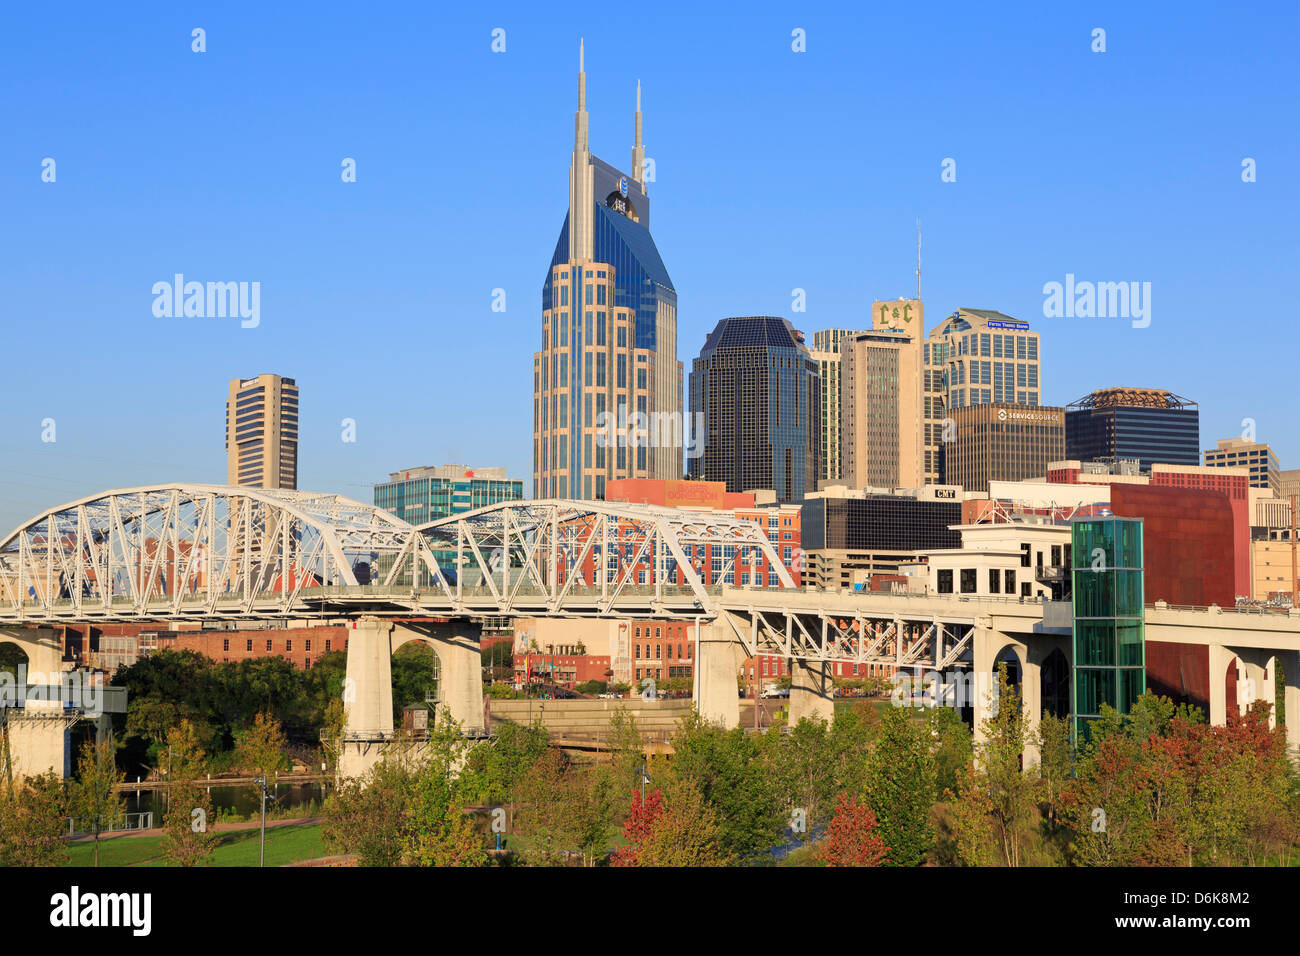 Shelby et Nashville skyline, New York, États-Unis d'Amérique, Amérique du Nord Banque D'Images